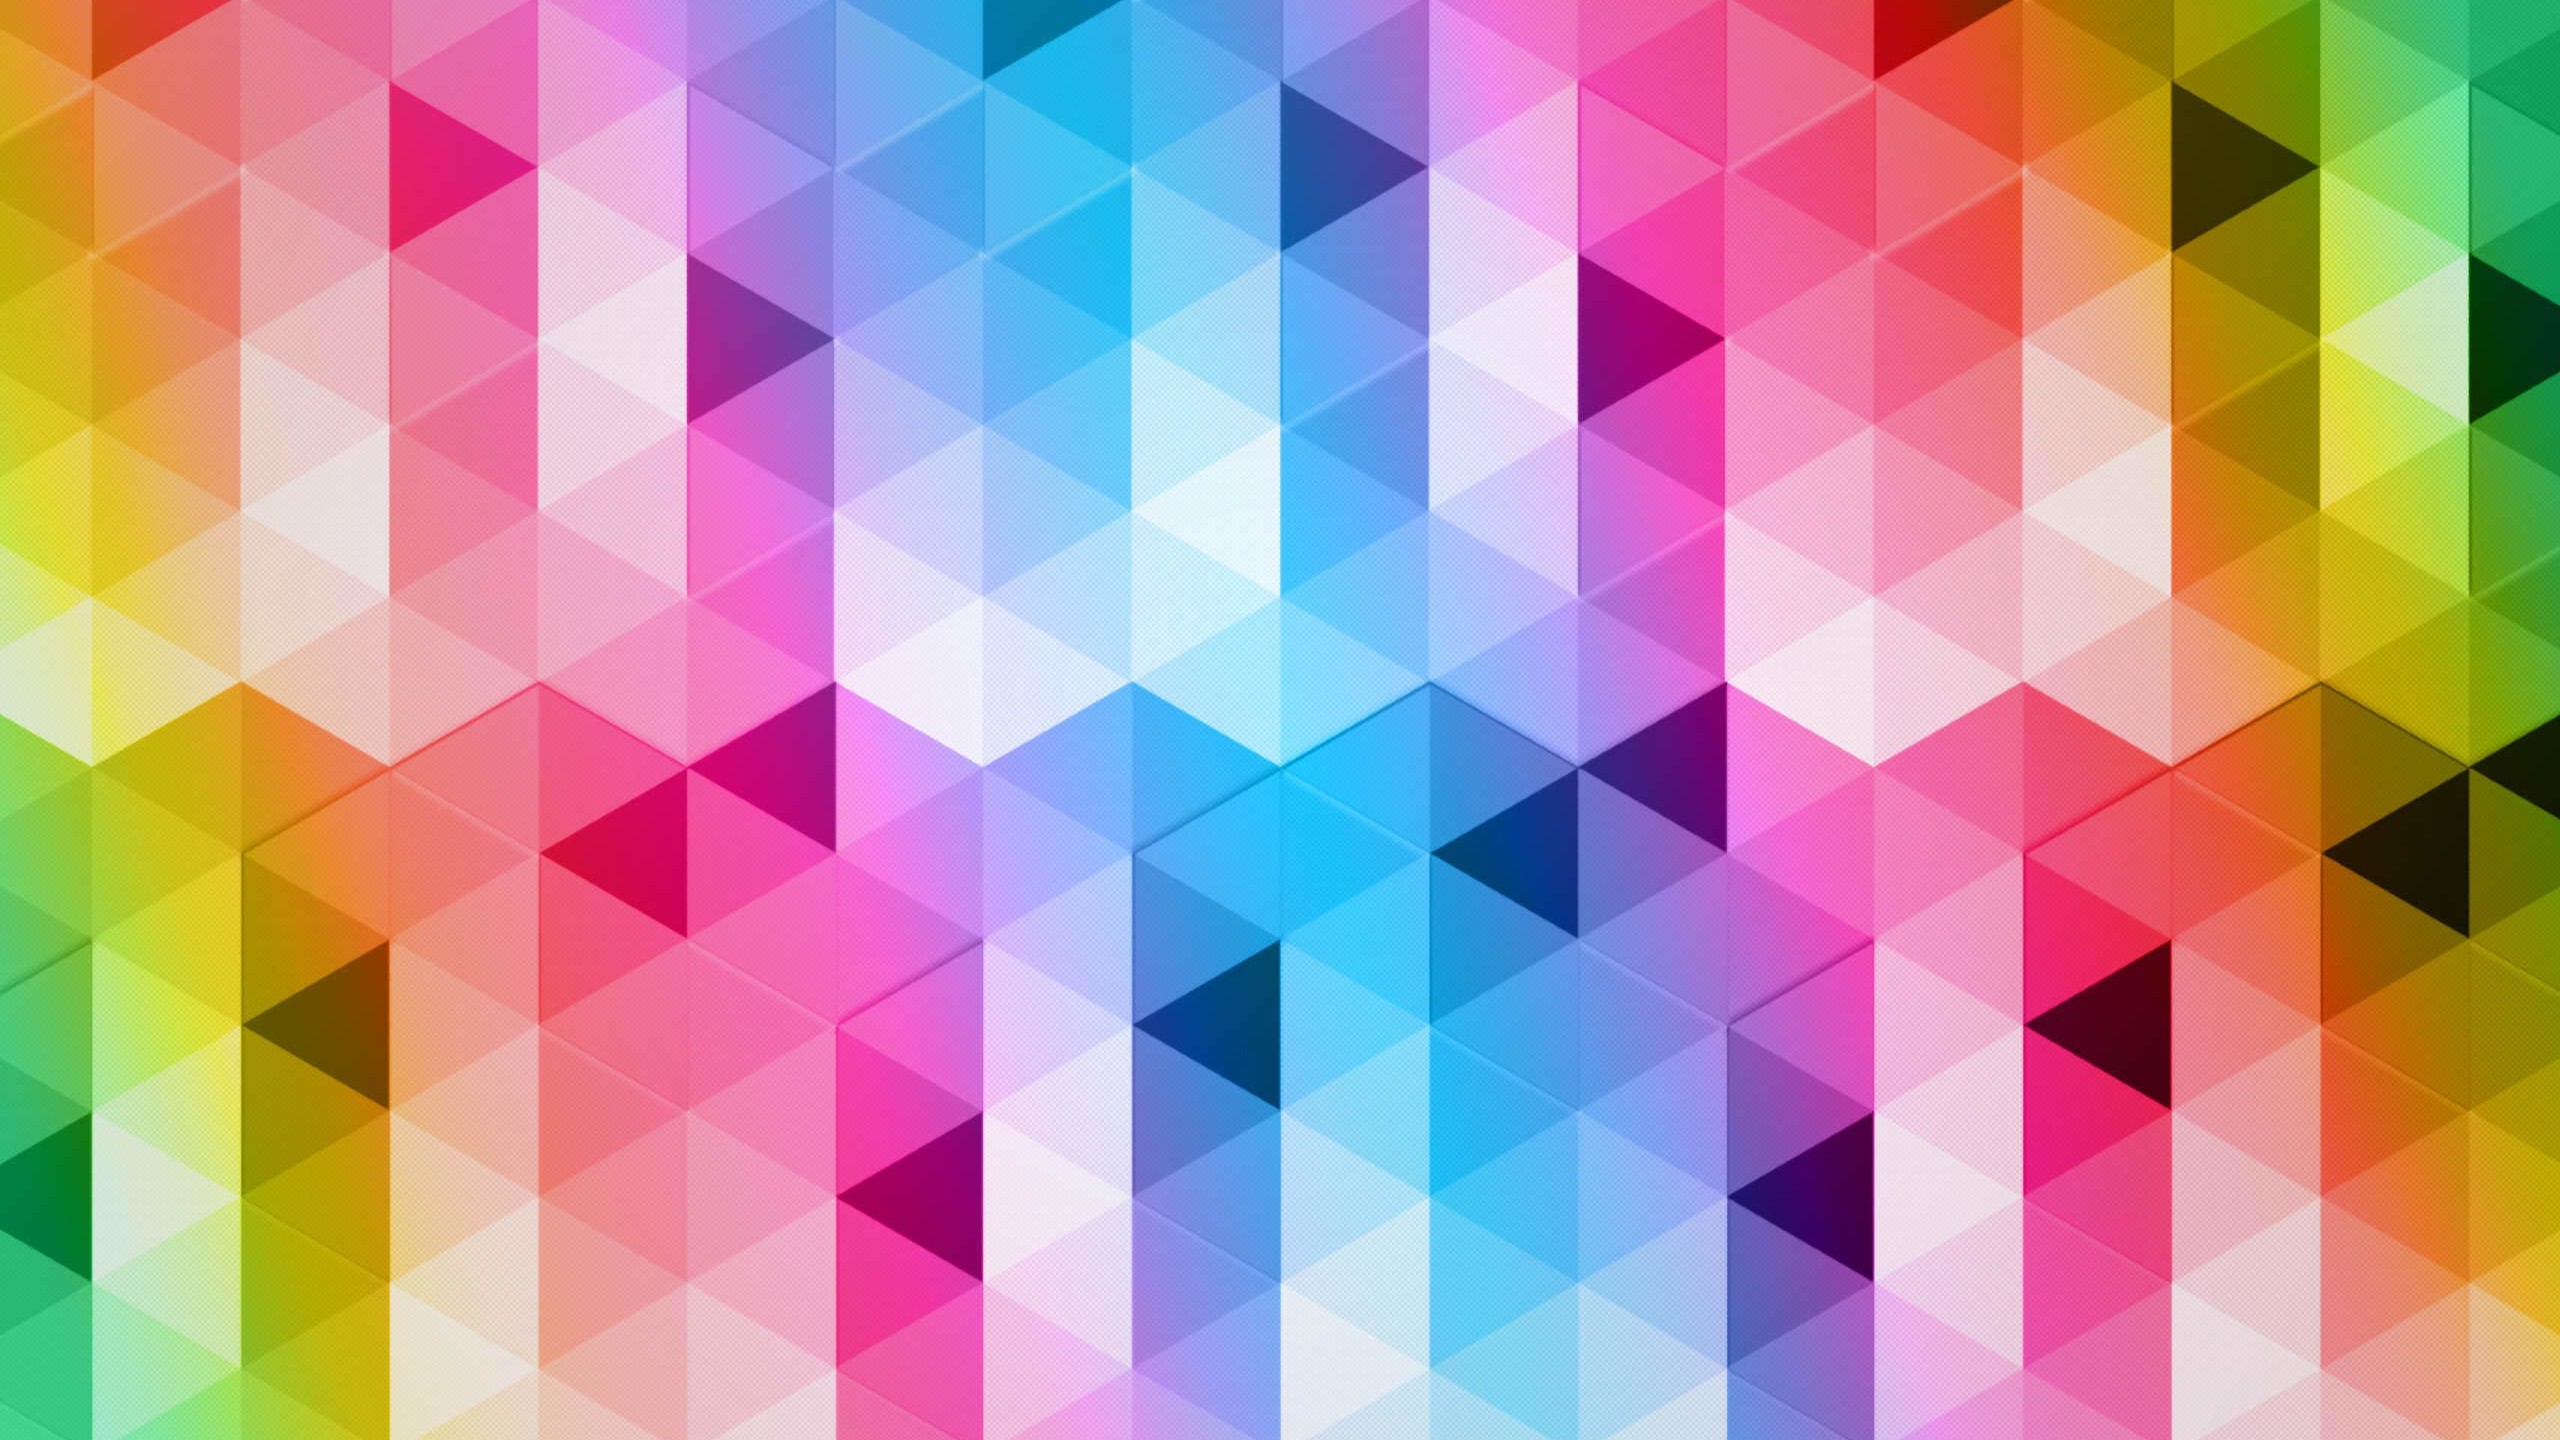 Triangular Grads Wallpaper for Social Media YouTube Channel Art